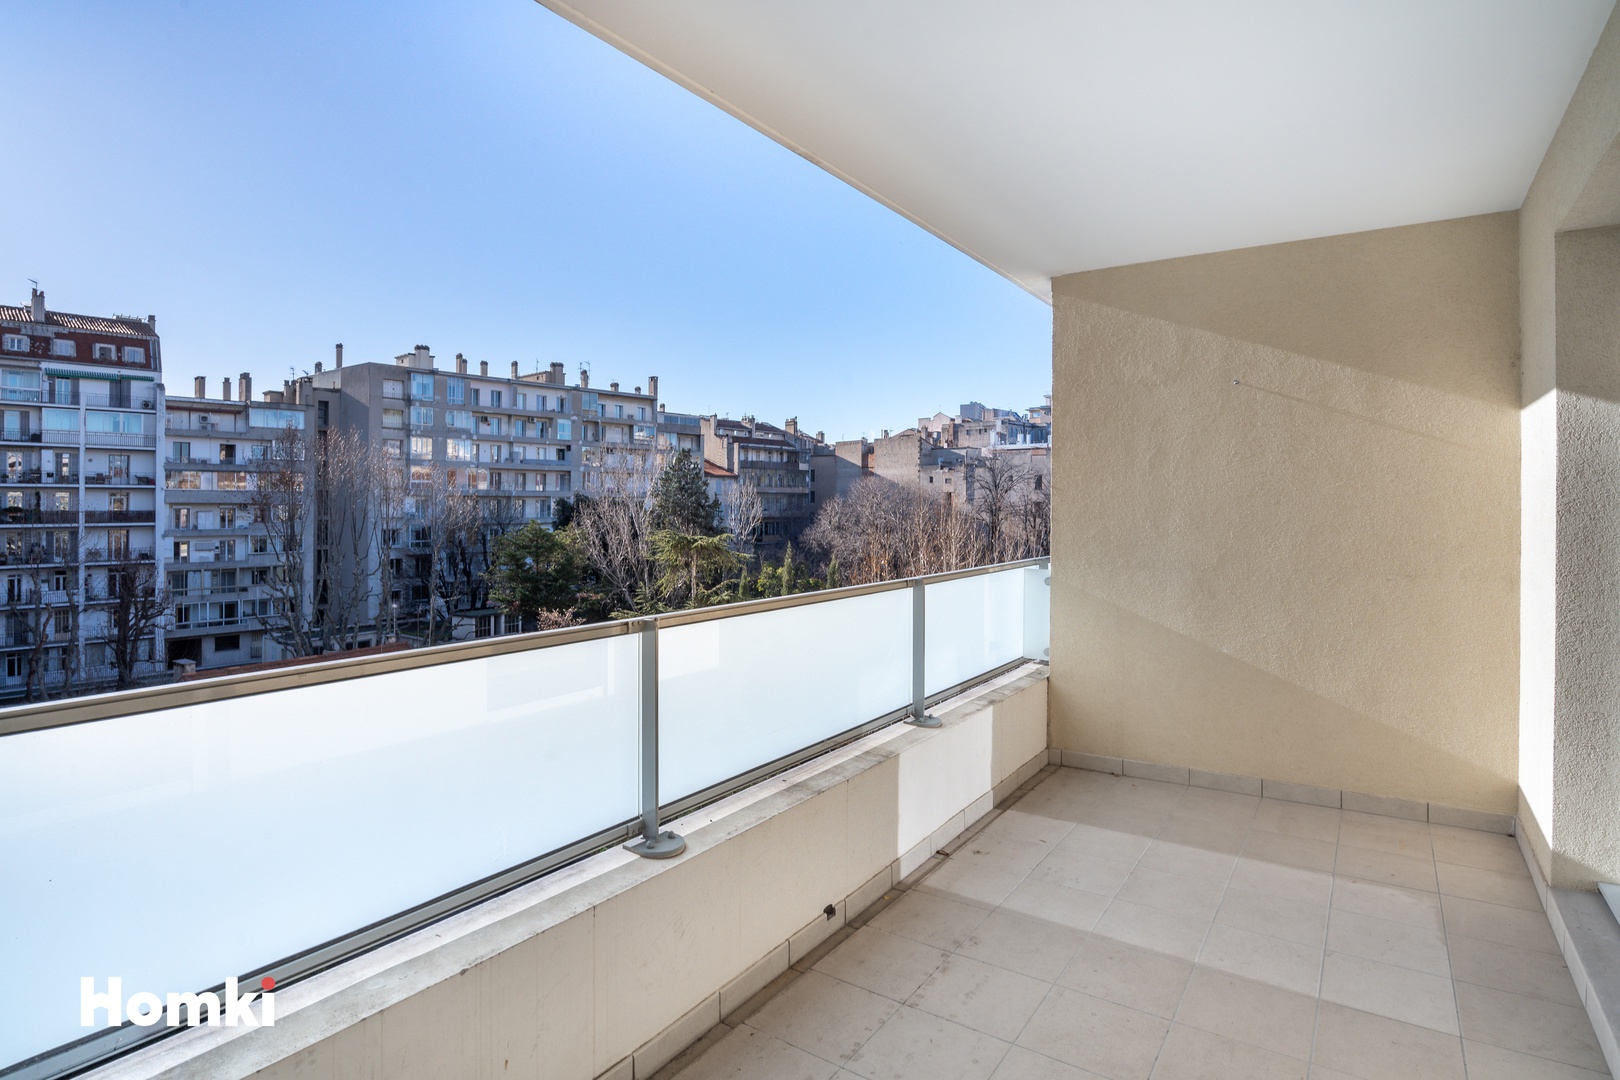 Homki - Vente Appartement  de 53.0 m² à Marseille 13008